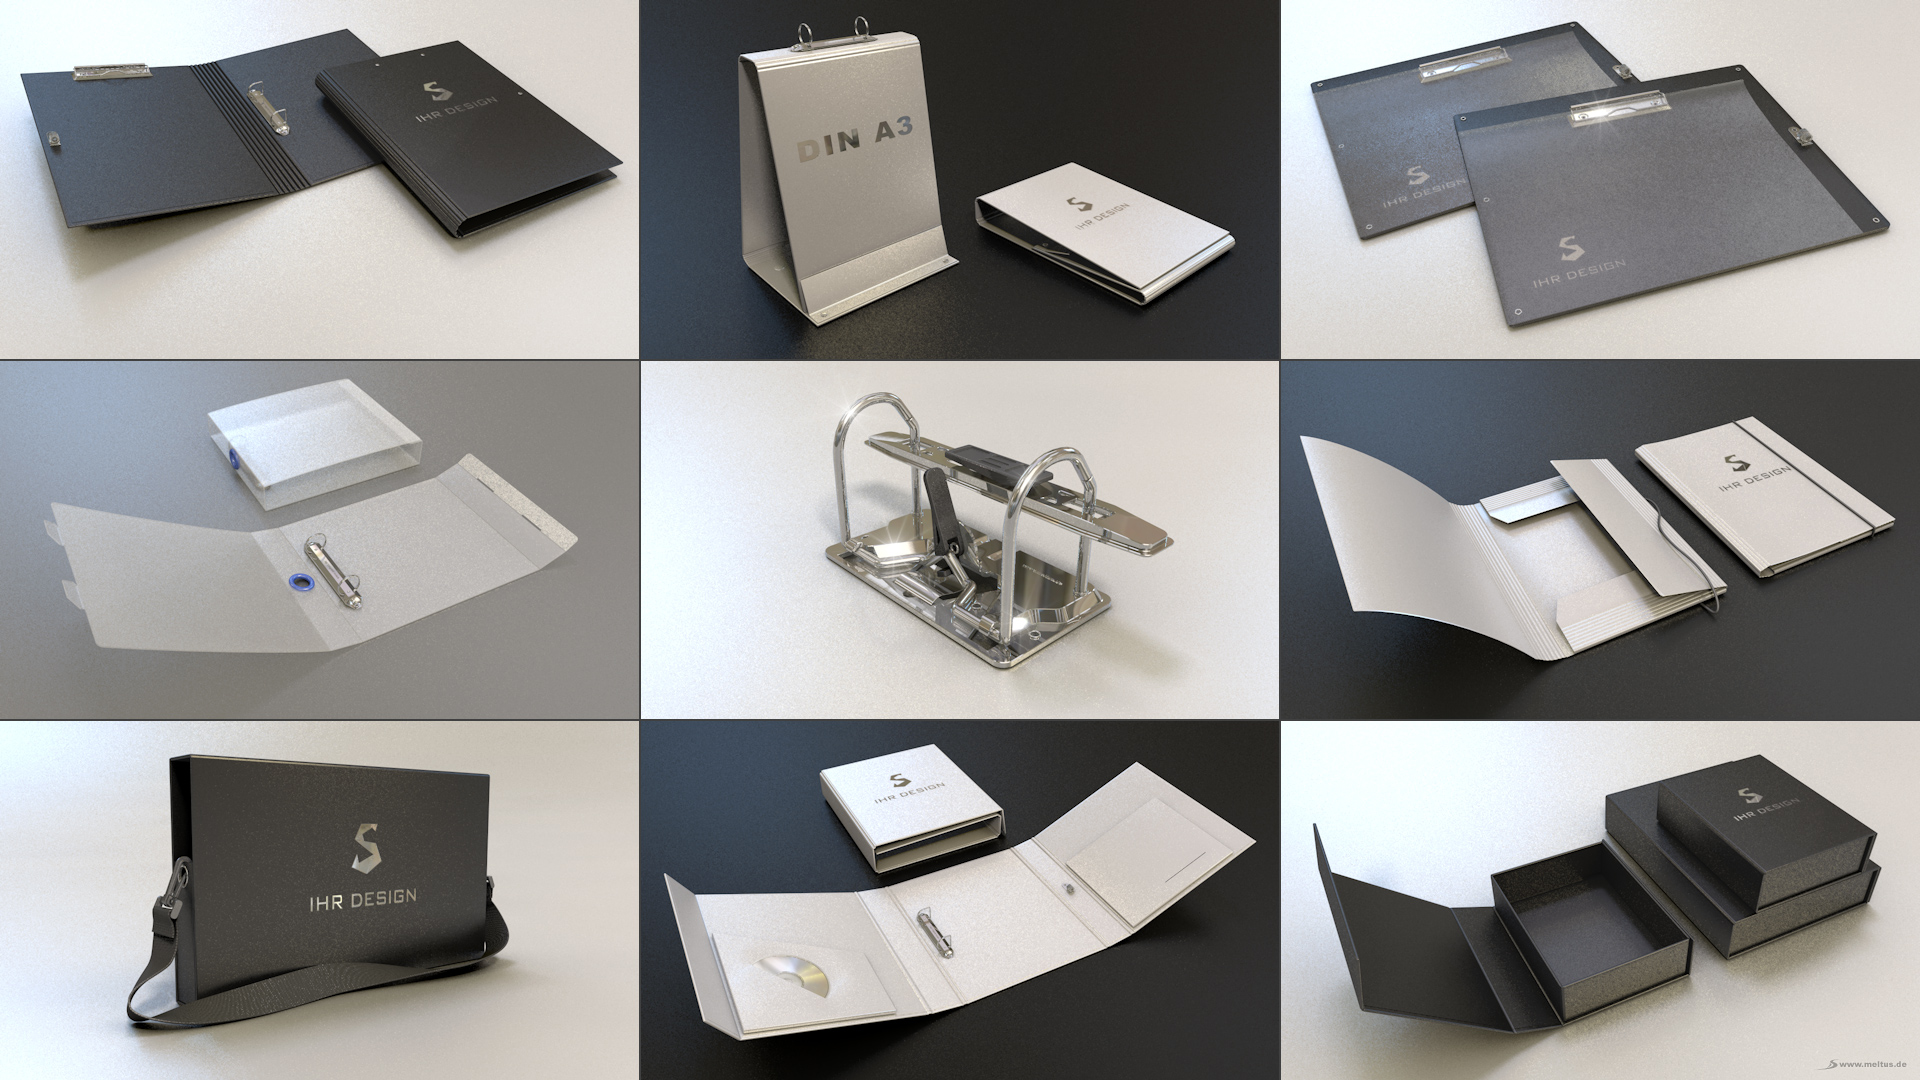 3D Produktvisualisierung: Klappschachtel - 3D Produktvisualisierung verschiedener Verpackungen und Officeprodukten wie Ringordner für die Schlender GmbH & Co. KG.